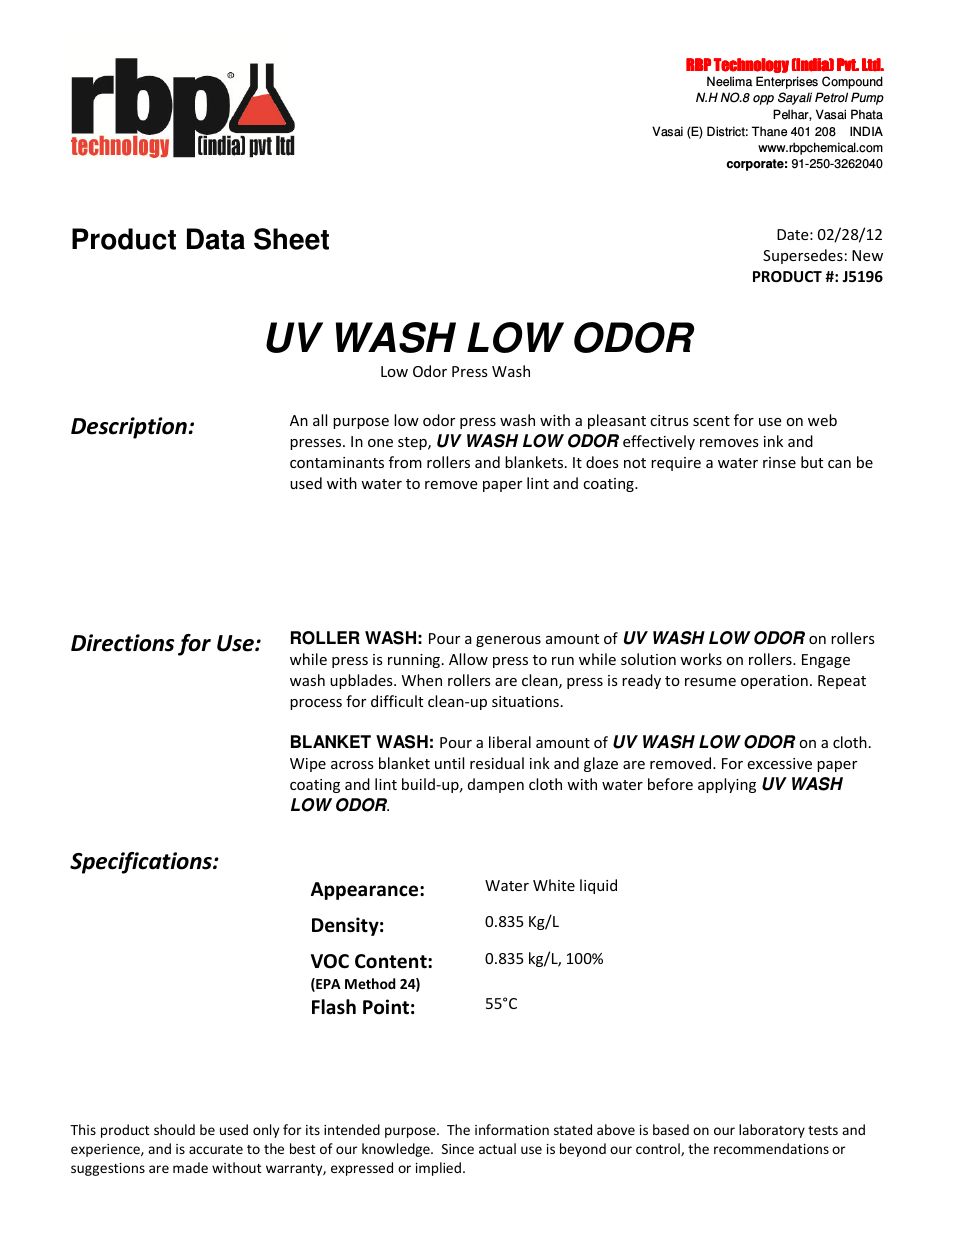 J5196 UV WASH LOW ODOR